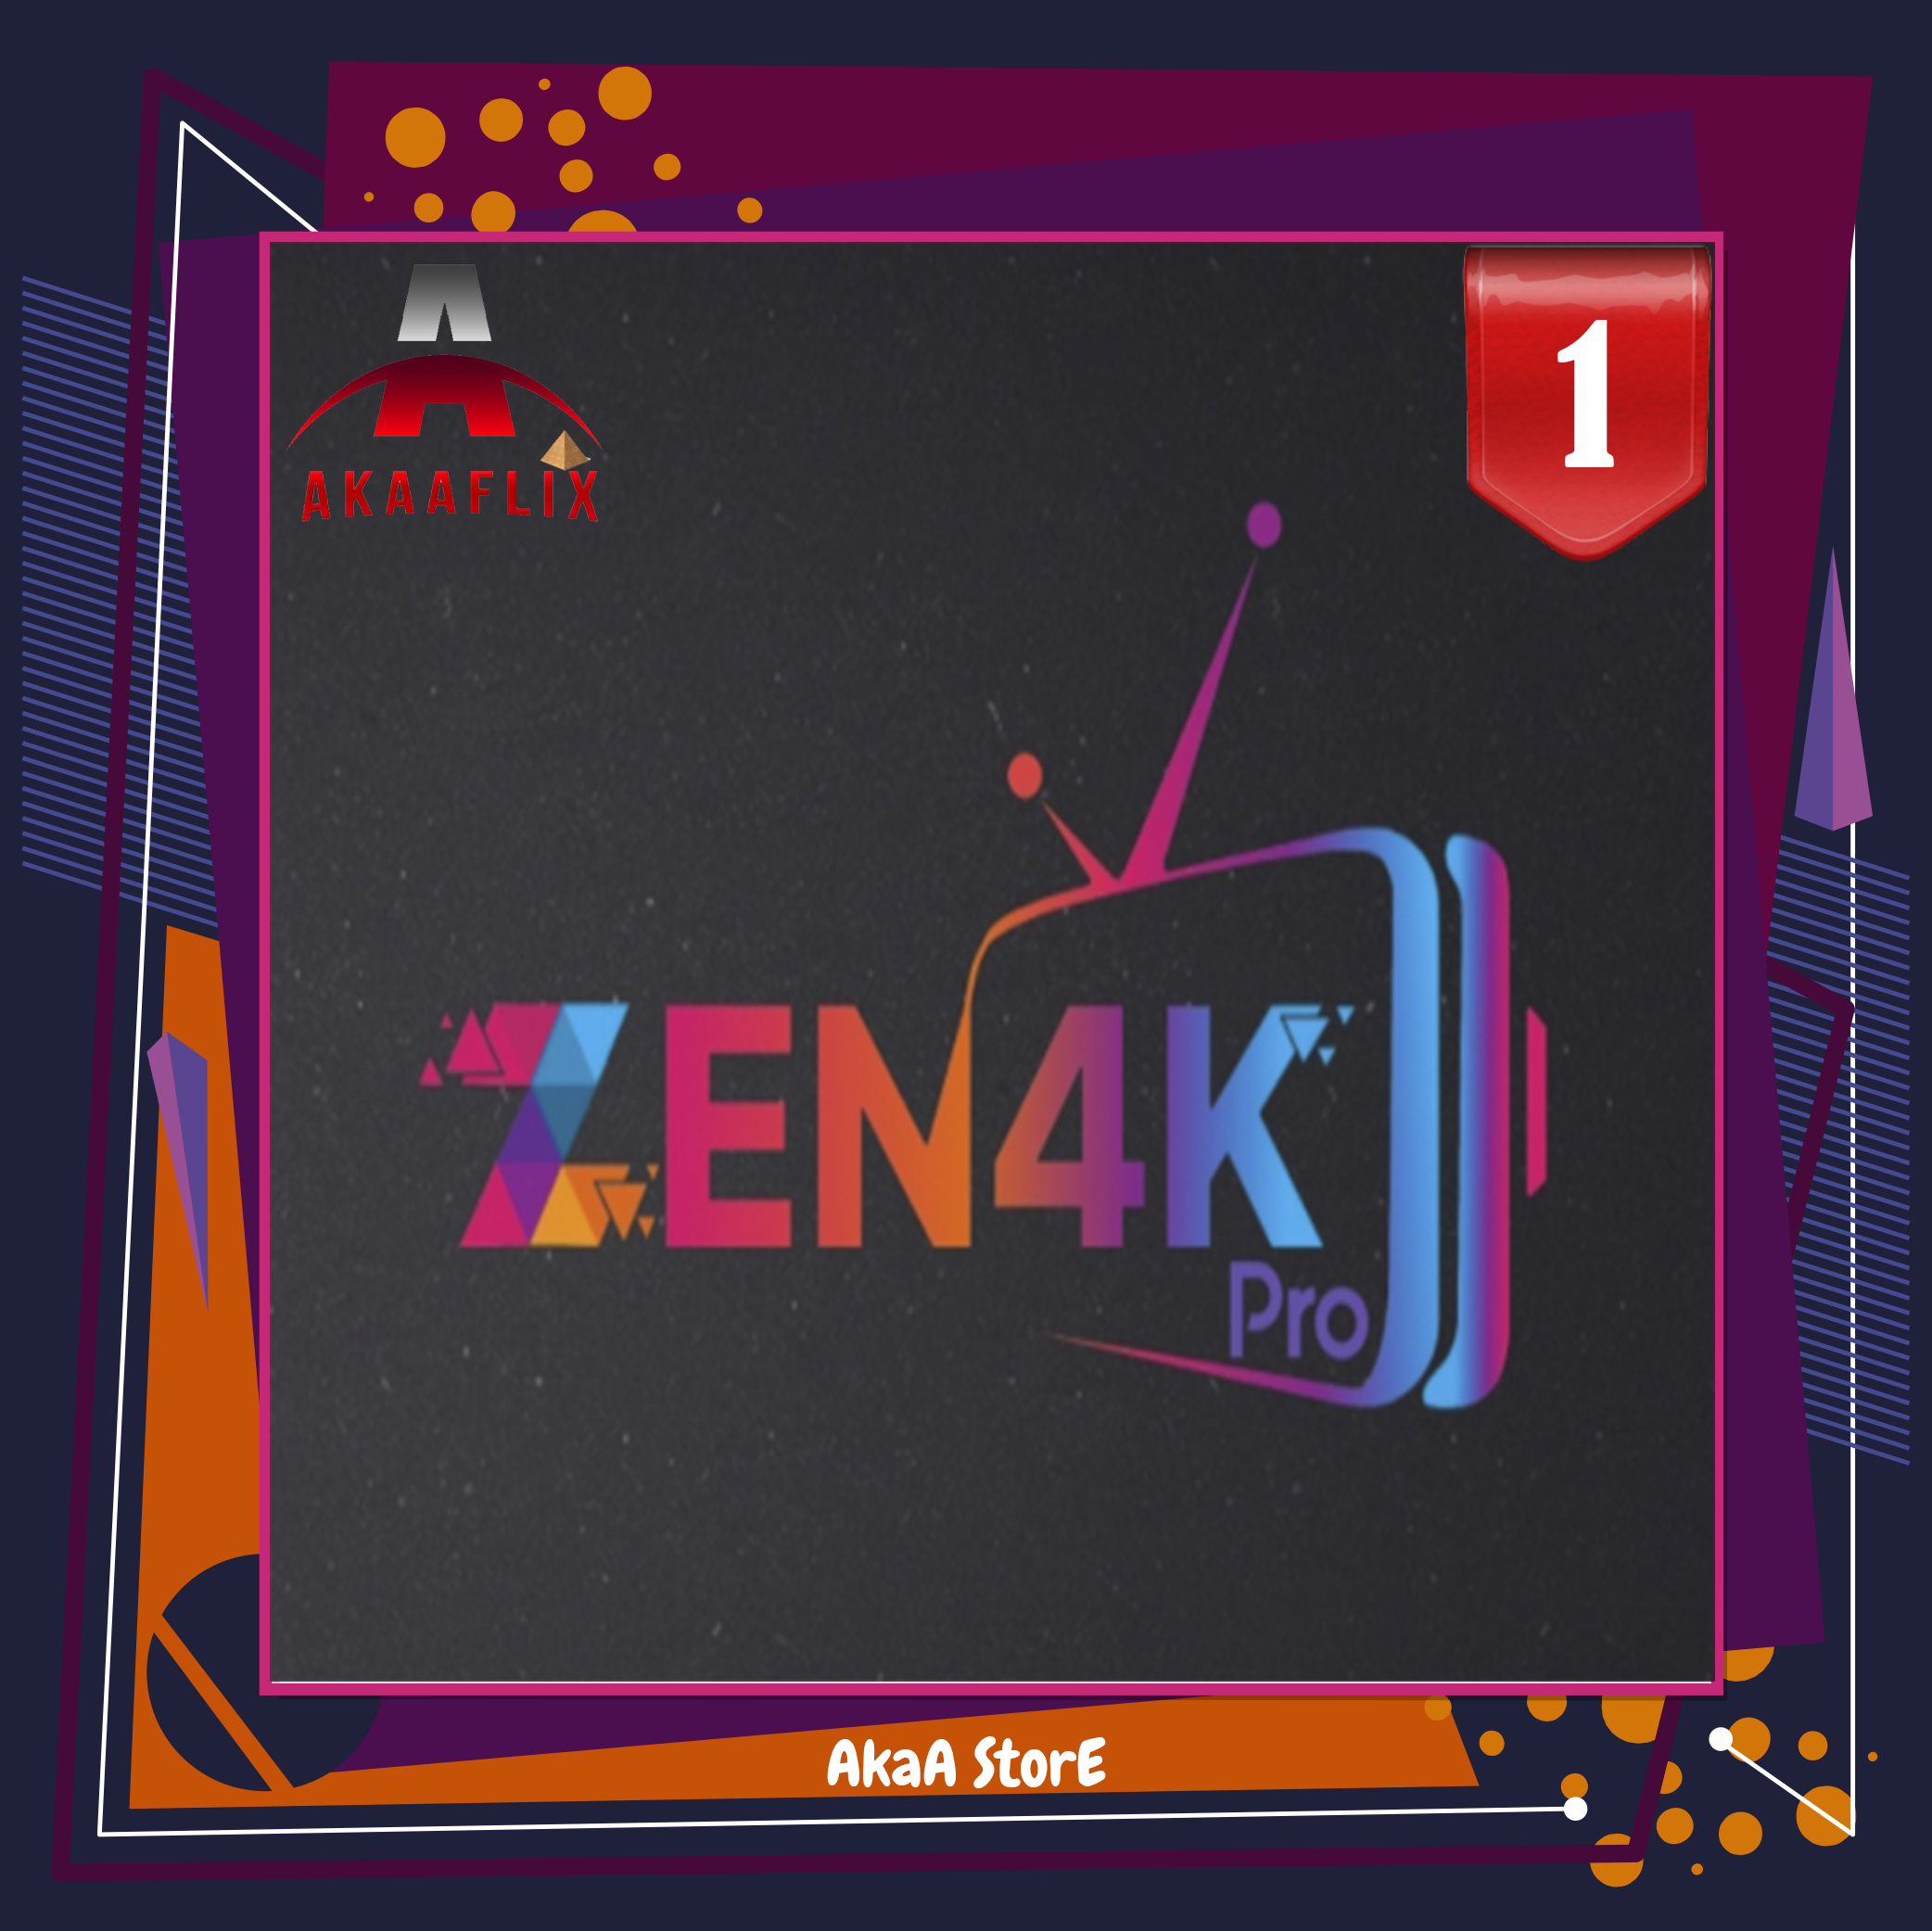 اشتراك ZEN4K زين 1 شهر